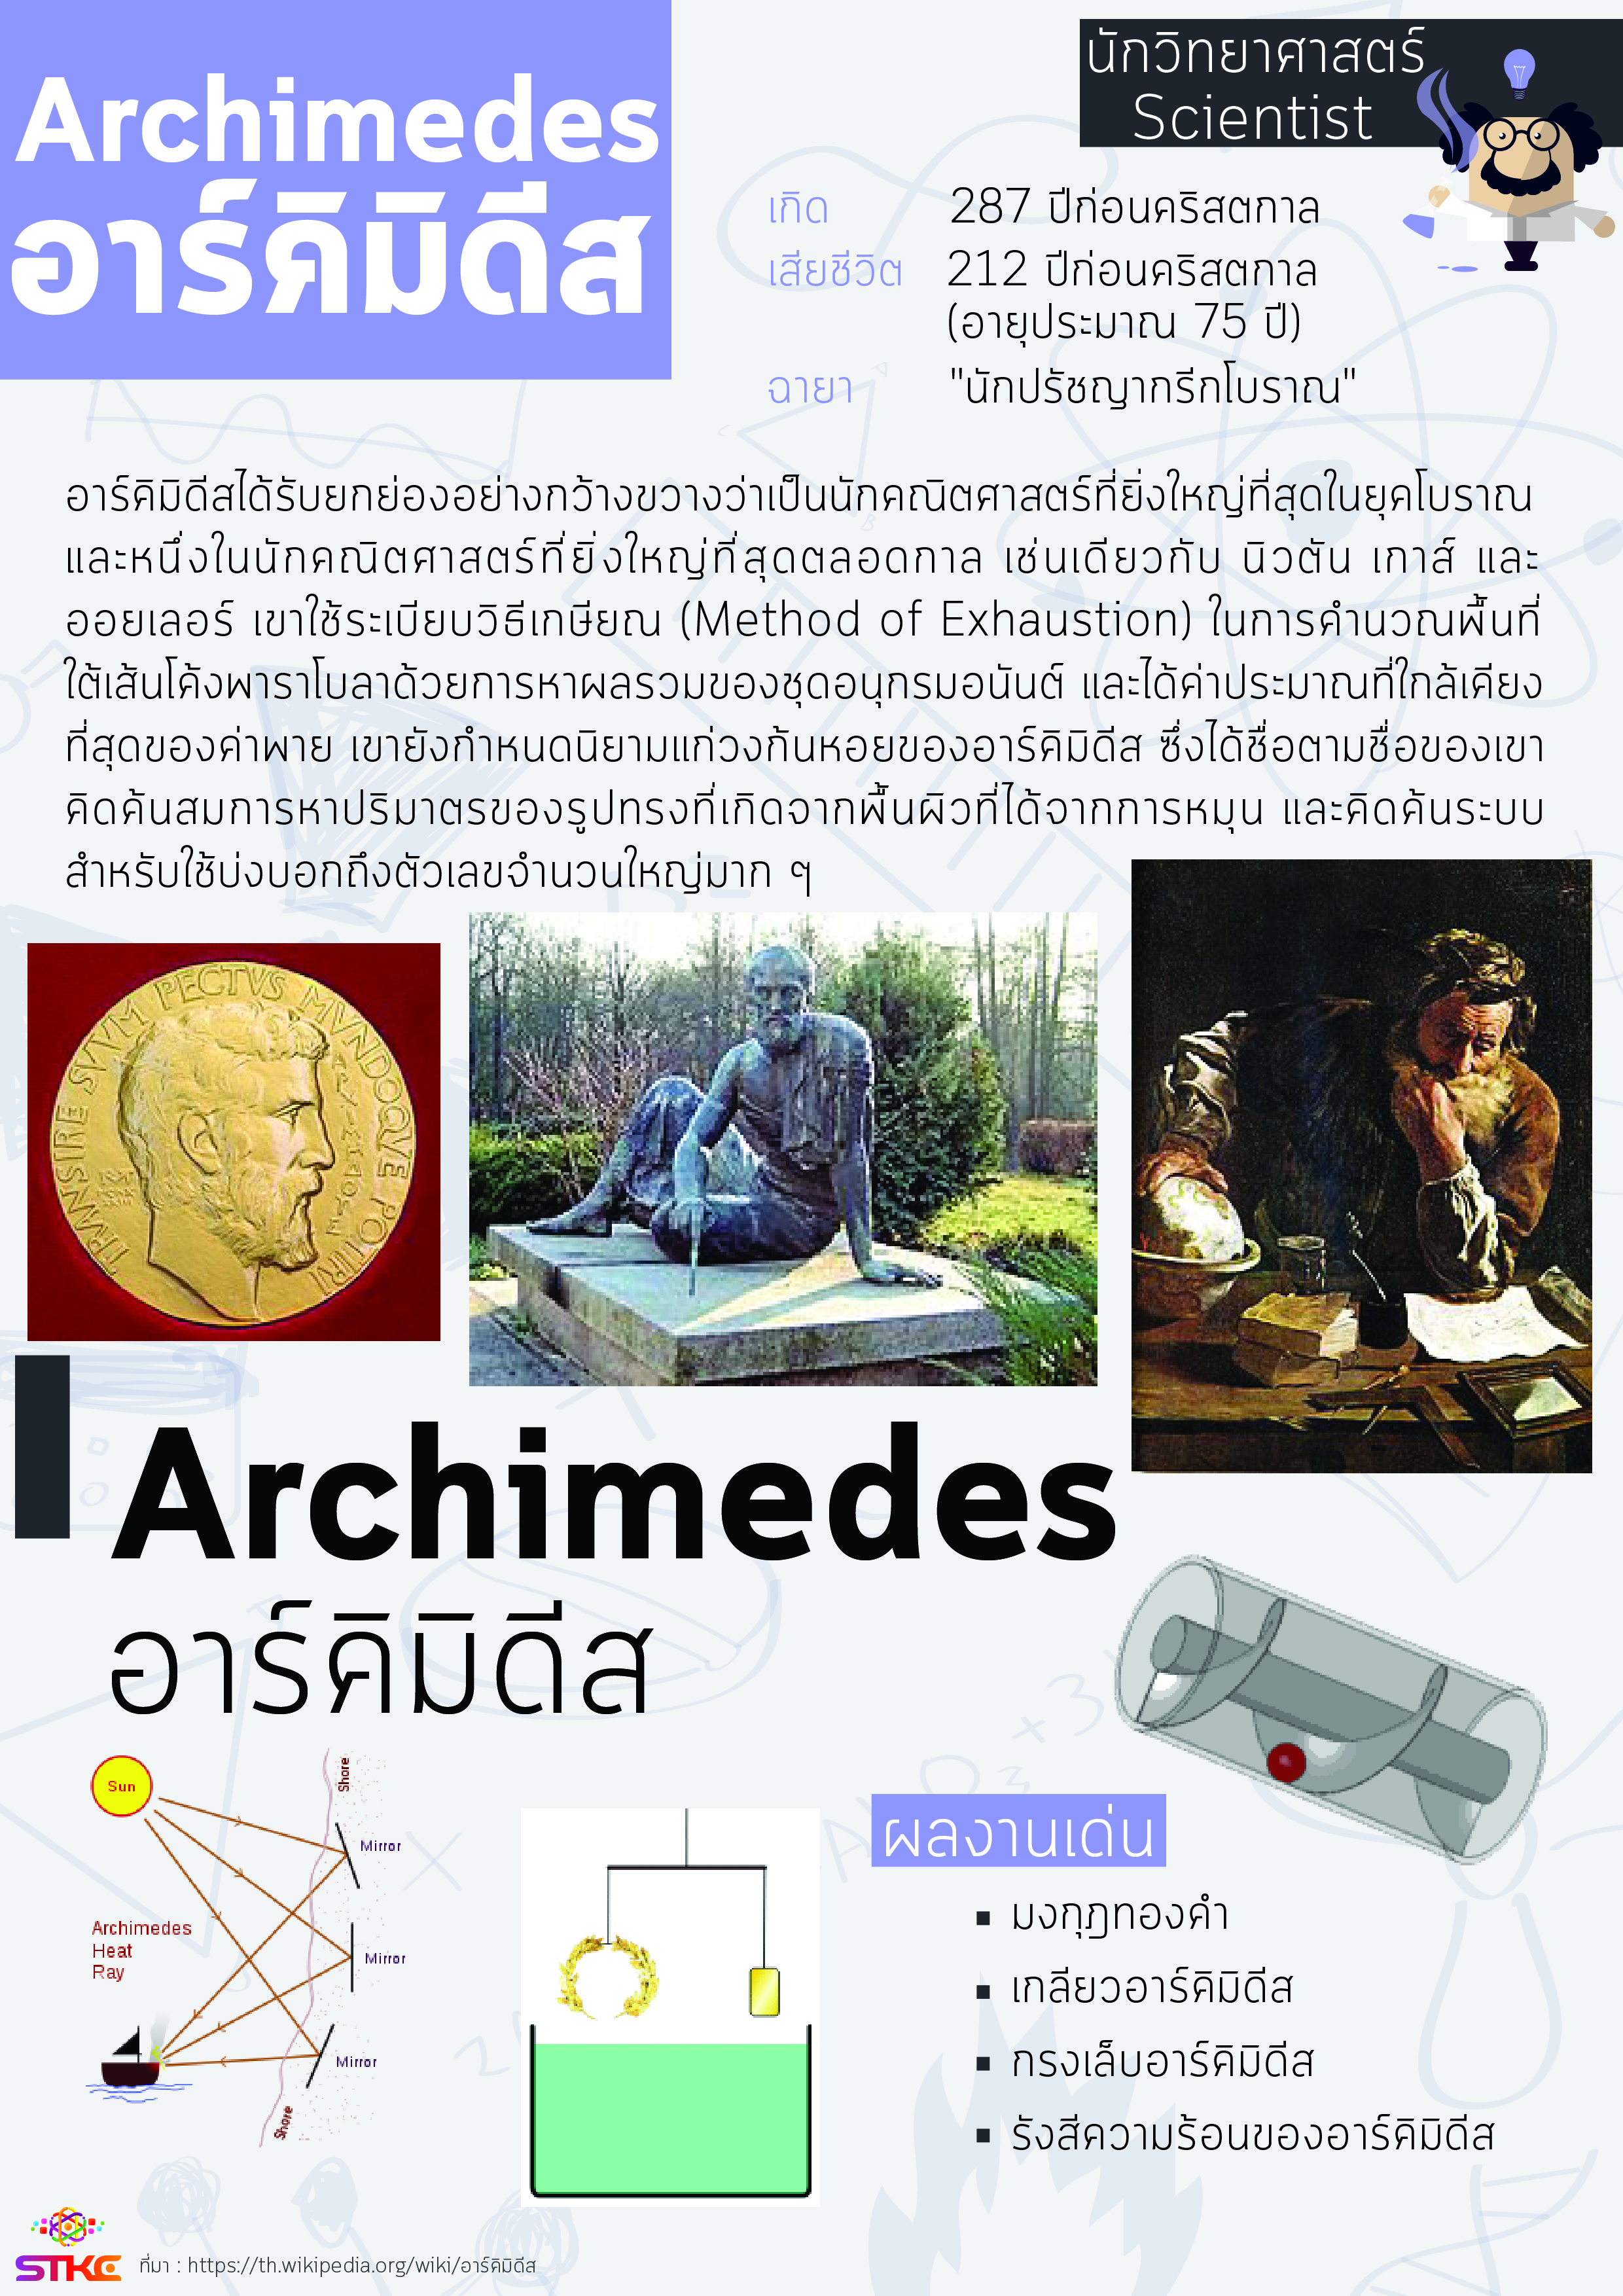 นักวิทยาศาสตร์ อาร์คิมิดีส (Archimedes)